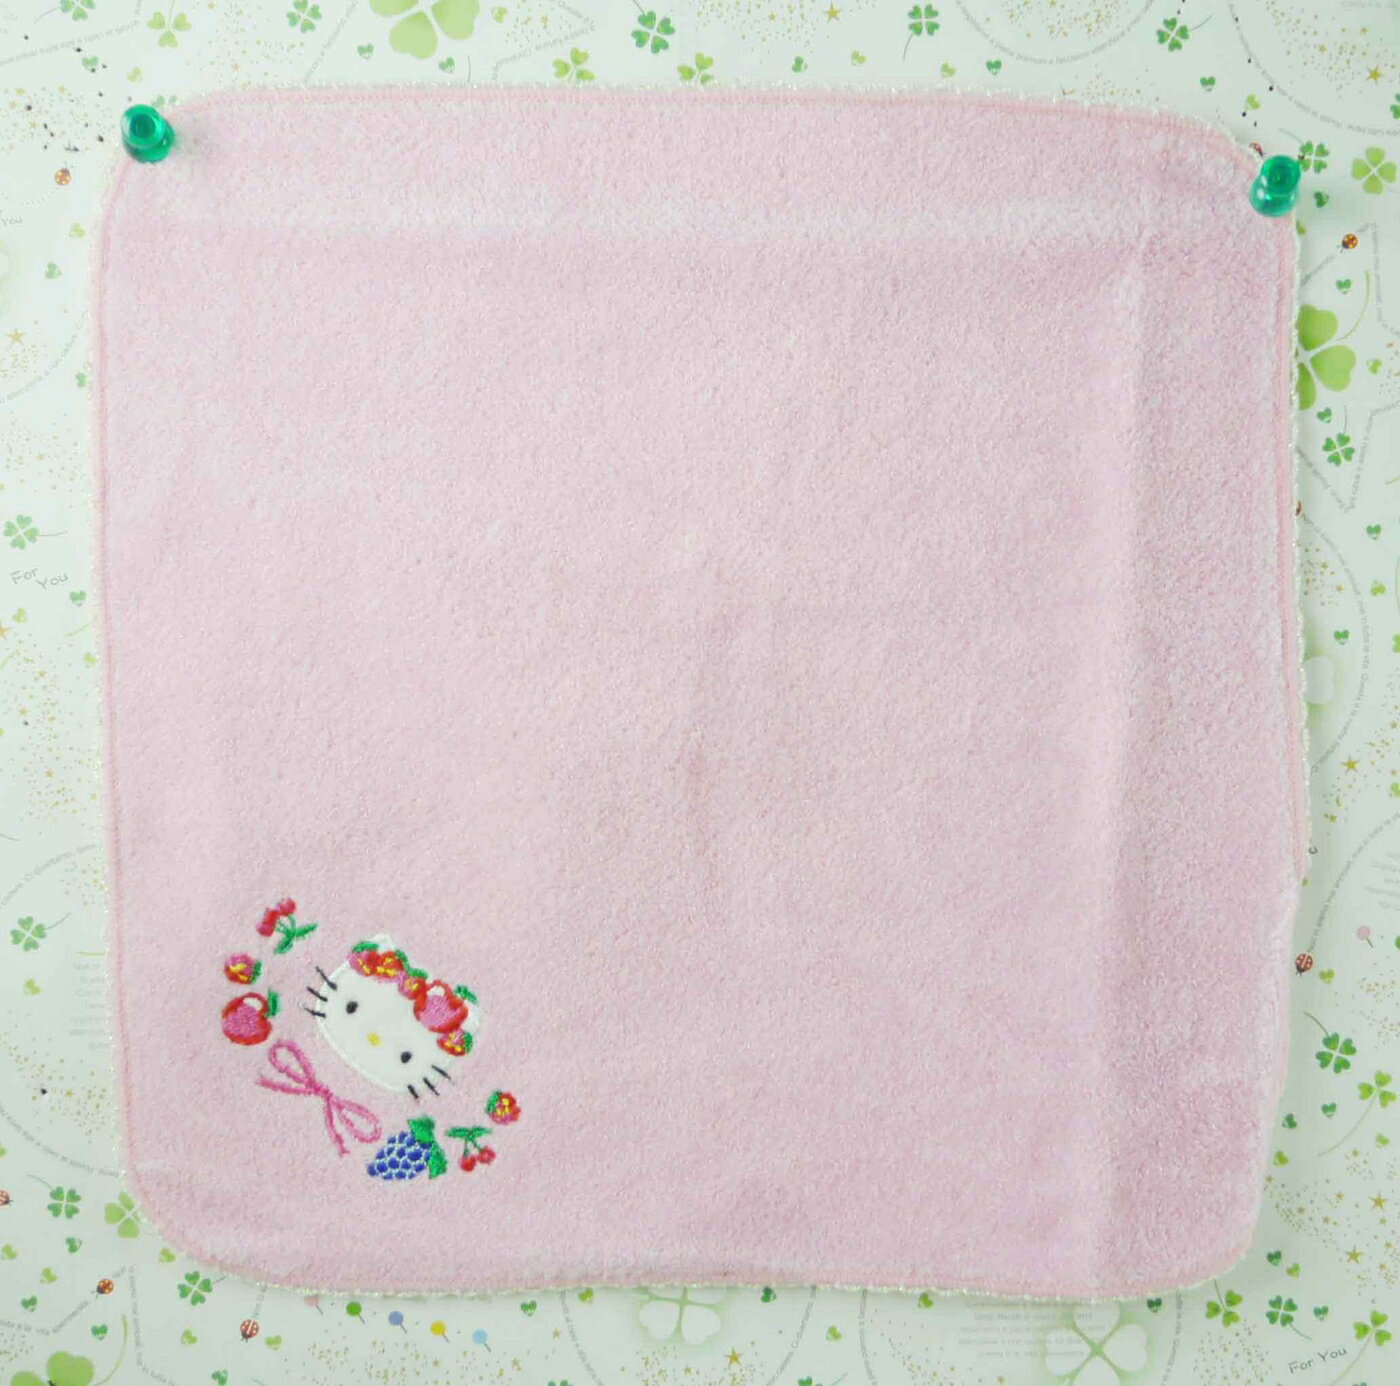 【震撼精品百貨】Hello Kitty 凱蒂貓 方巾/毛巾-粉色小水果 震撼日式精品百貨